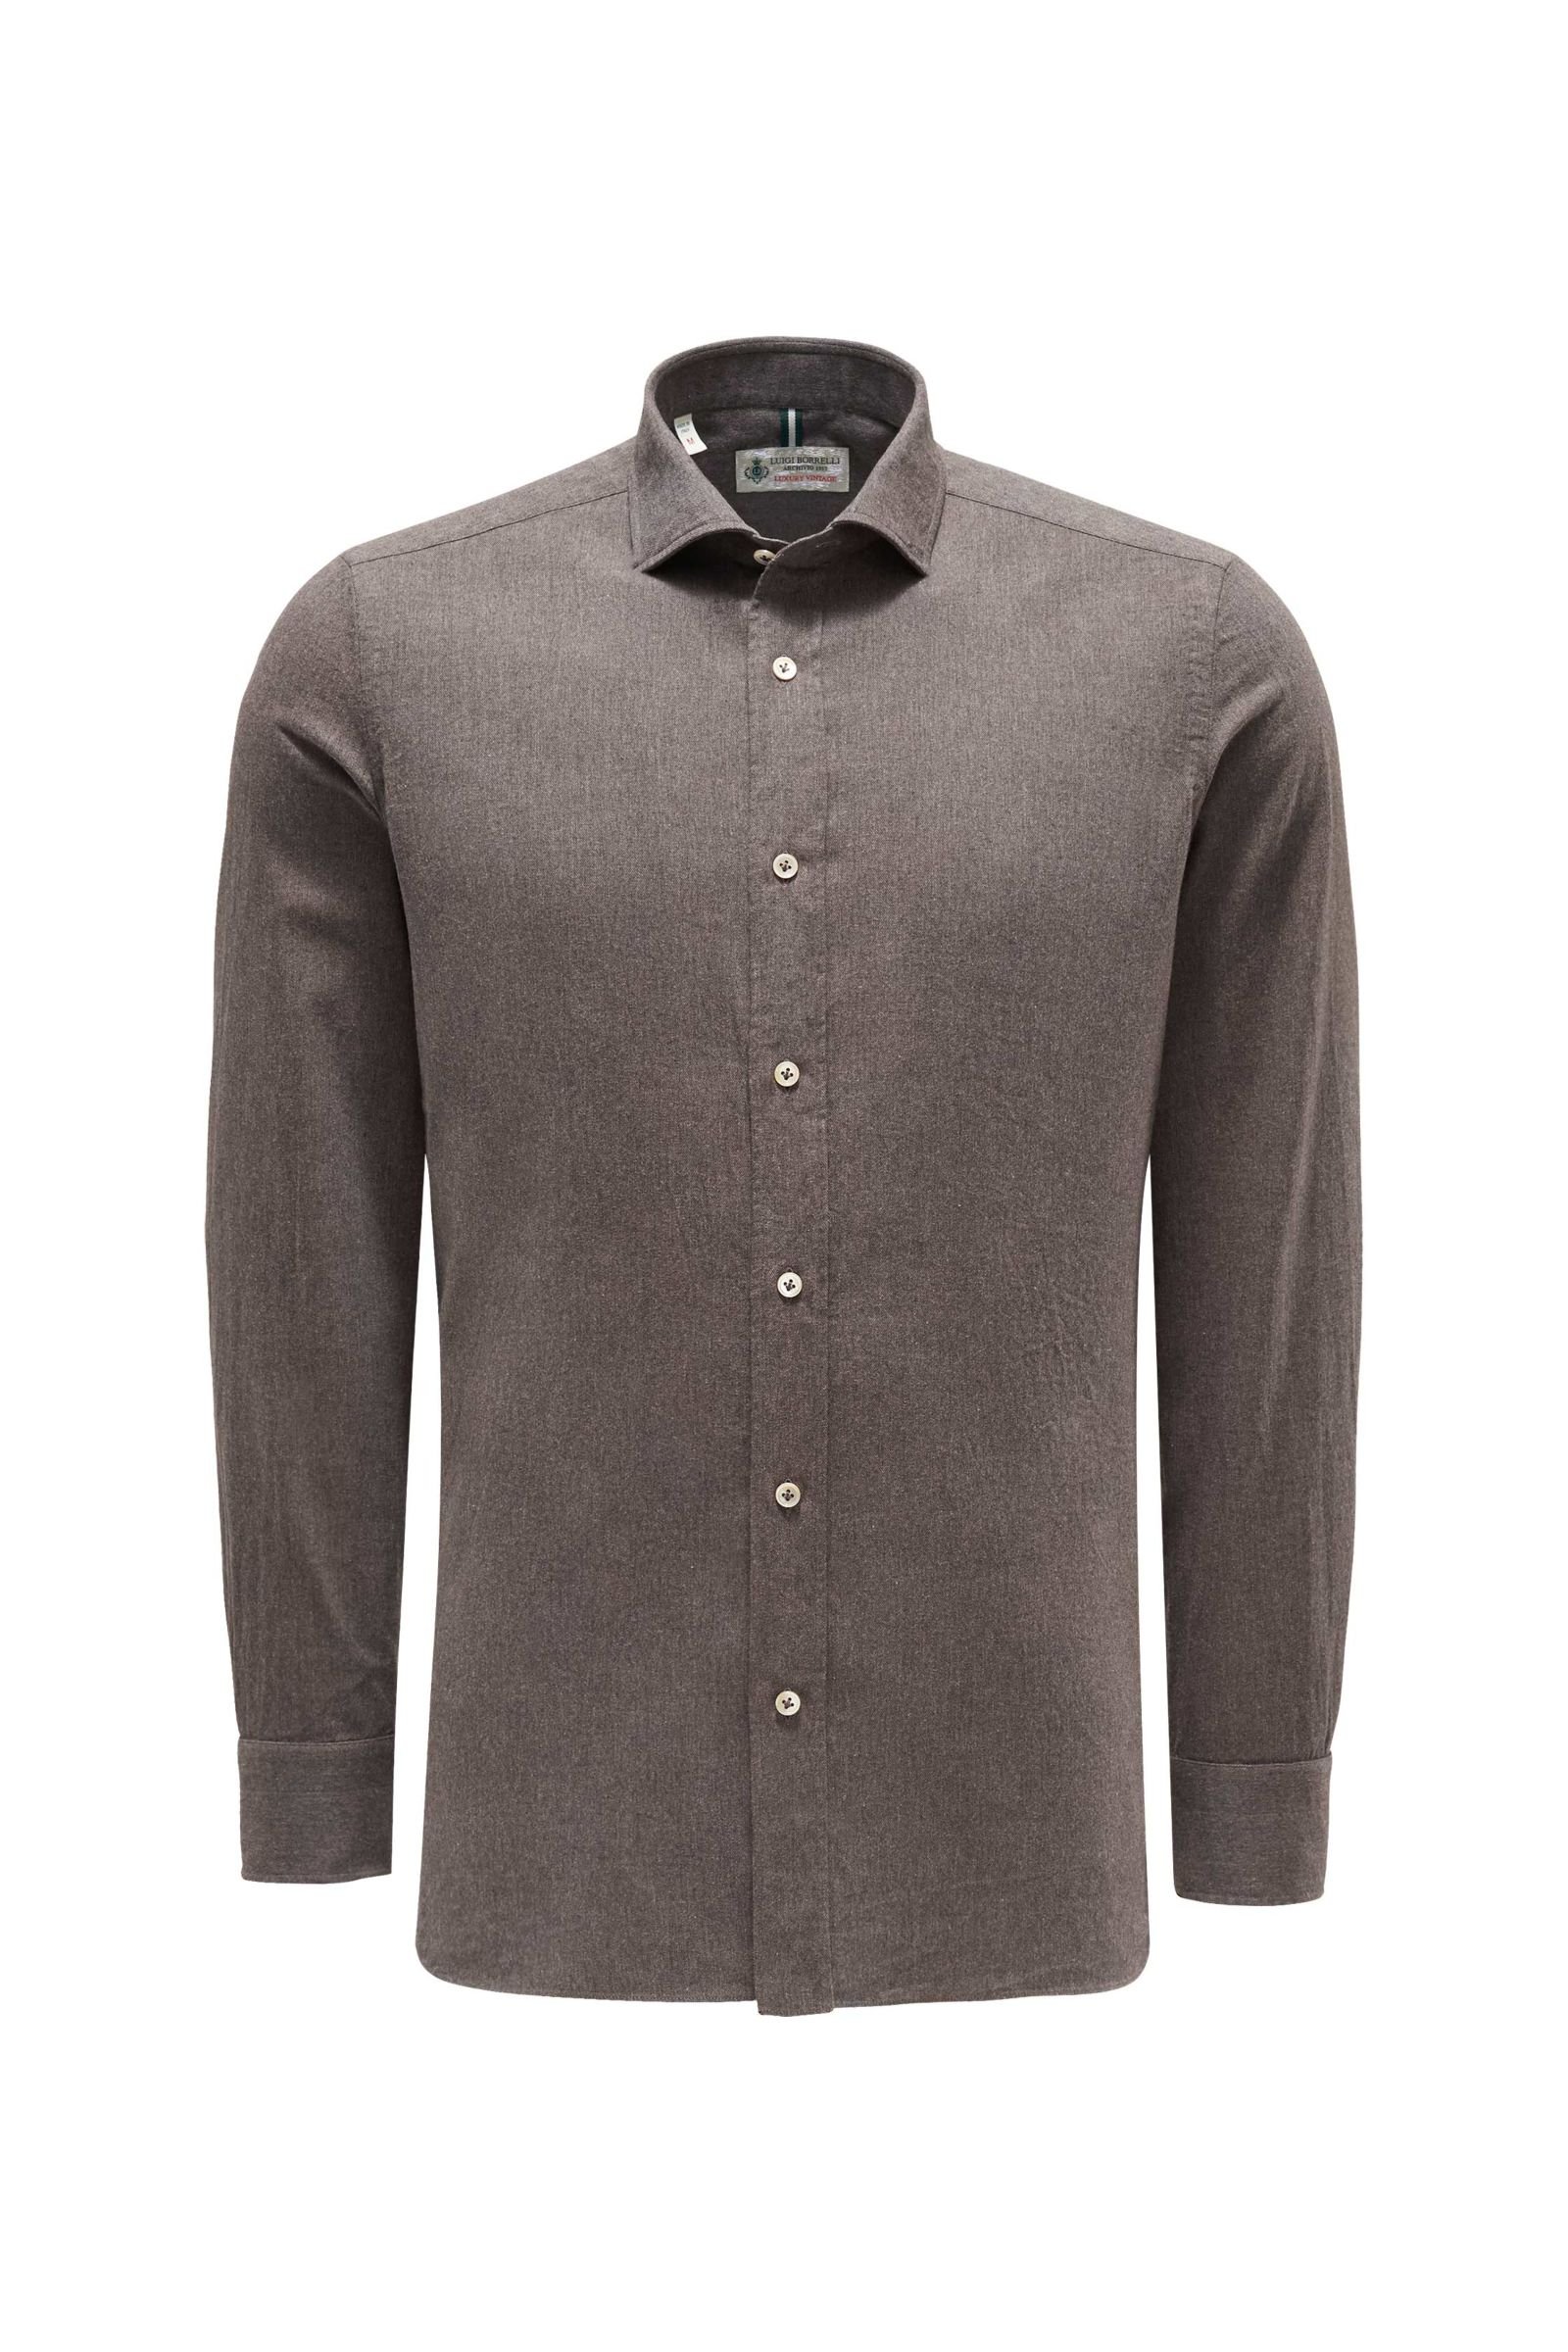 Casual shirt slim collar grey-brown